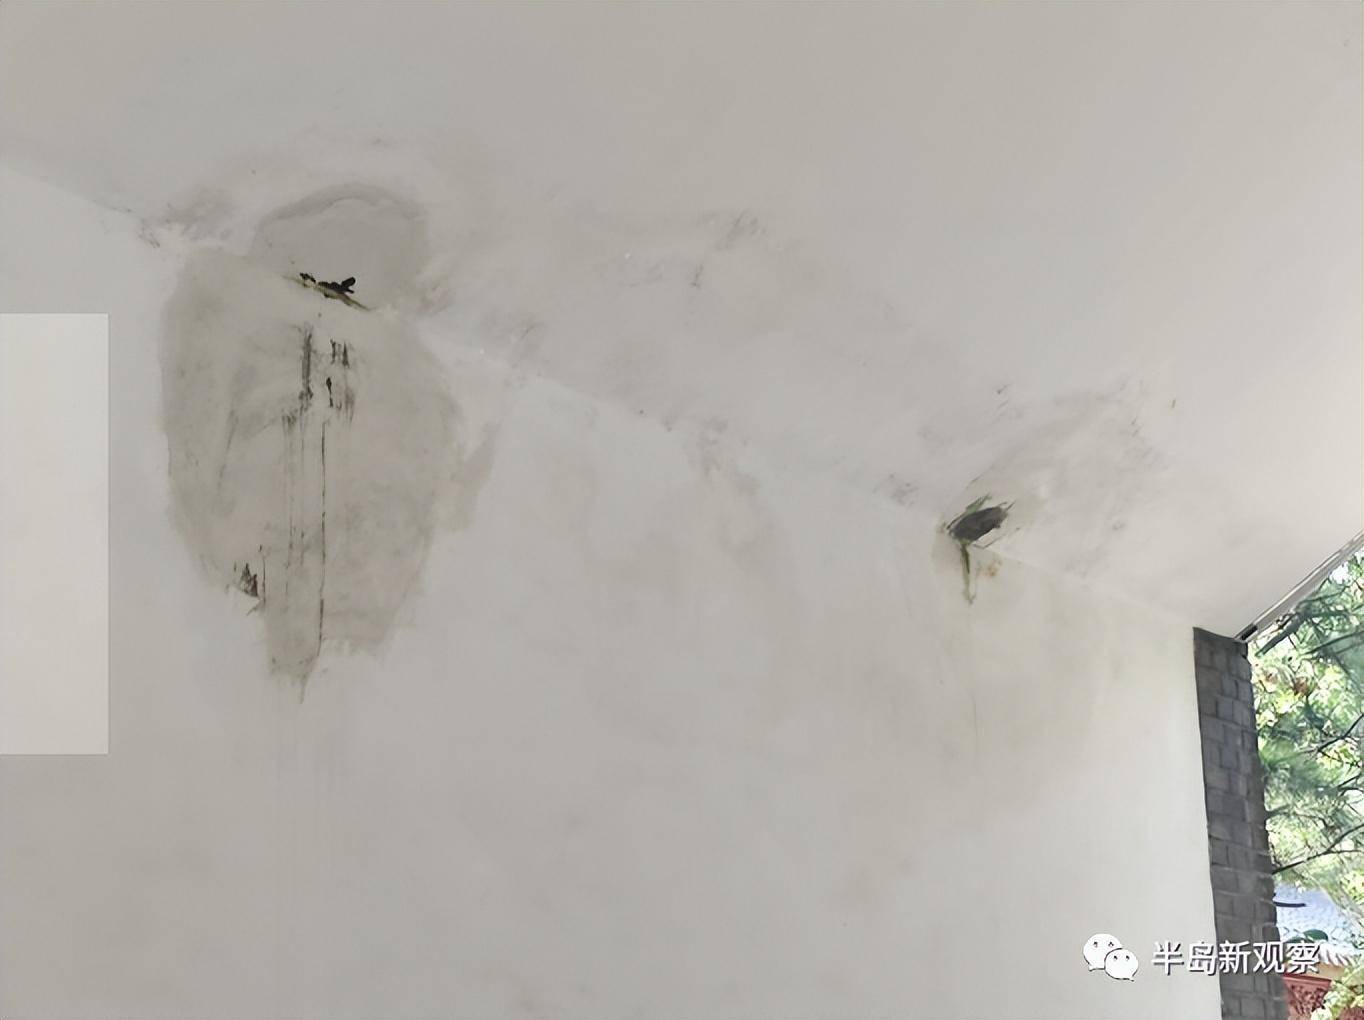 「即墨游记系列之二」即墨古城墙体啥原因向外渗水？